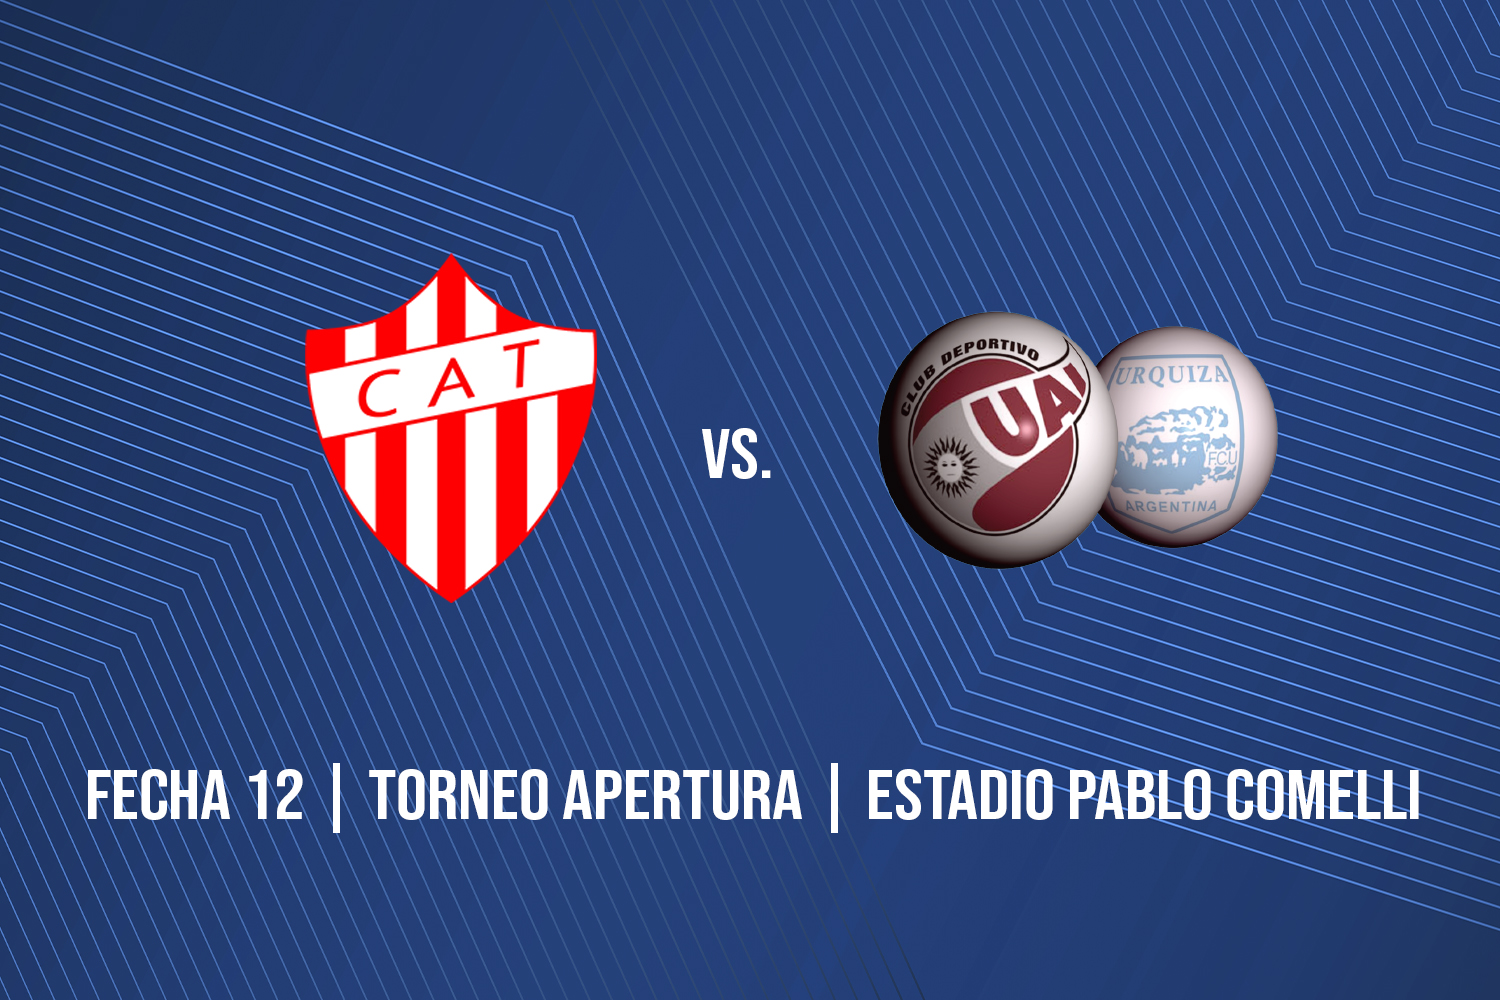 UAI Urquiza 0-1 Talleres (RdE), Primera División B